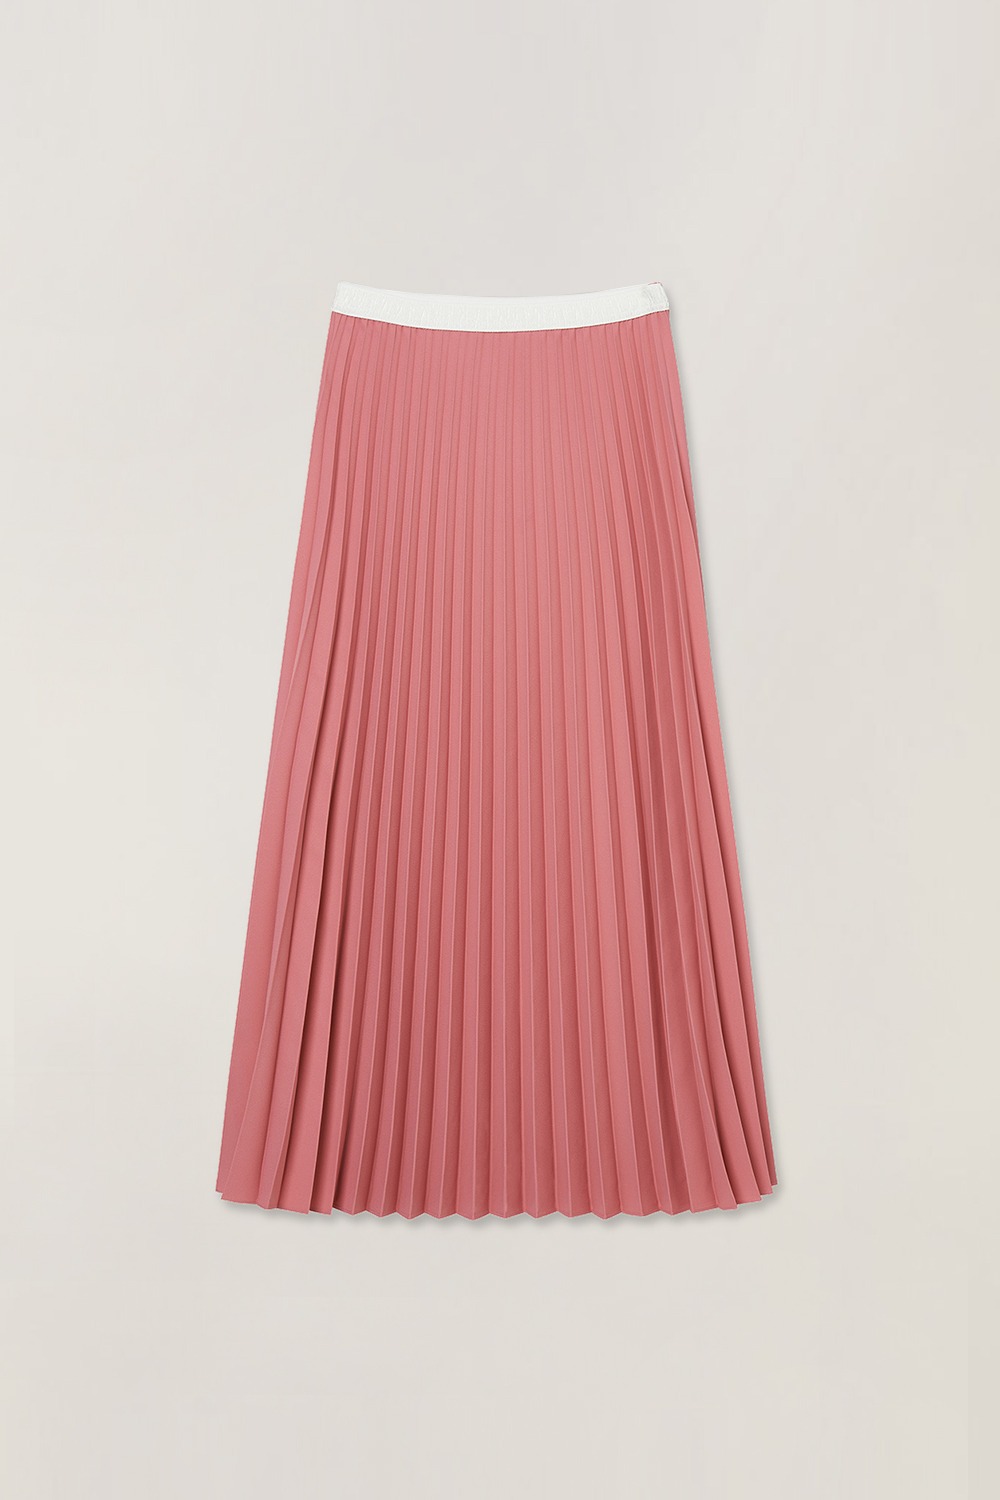 Women Pleats Maxi Skirt_Pink